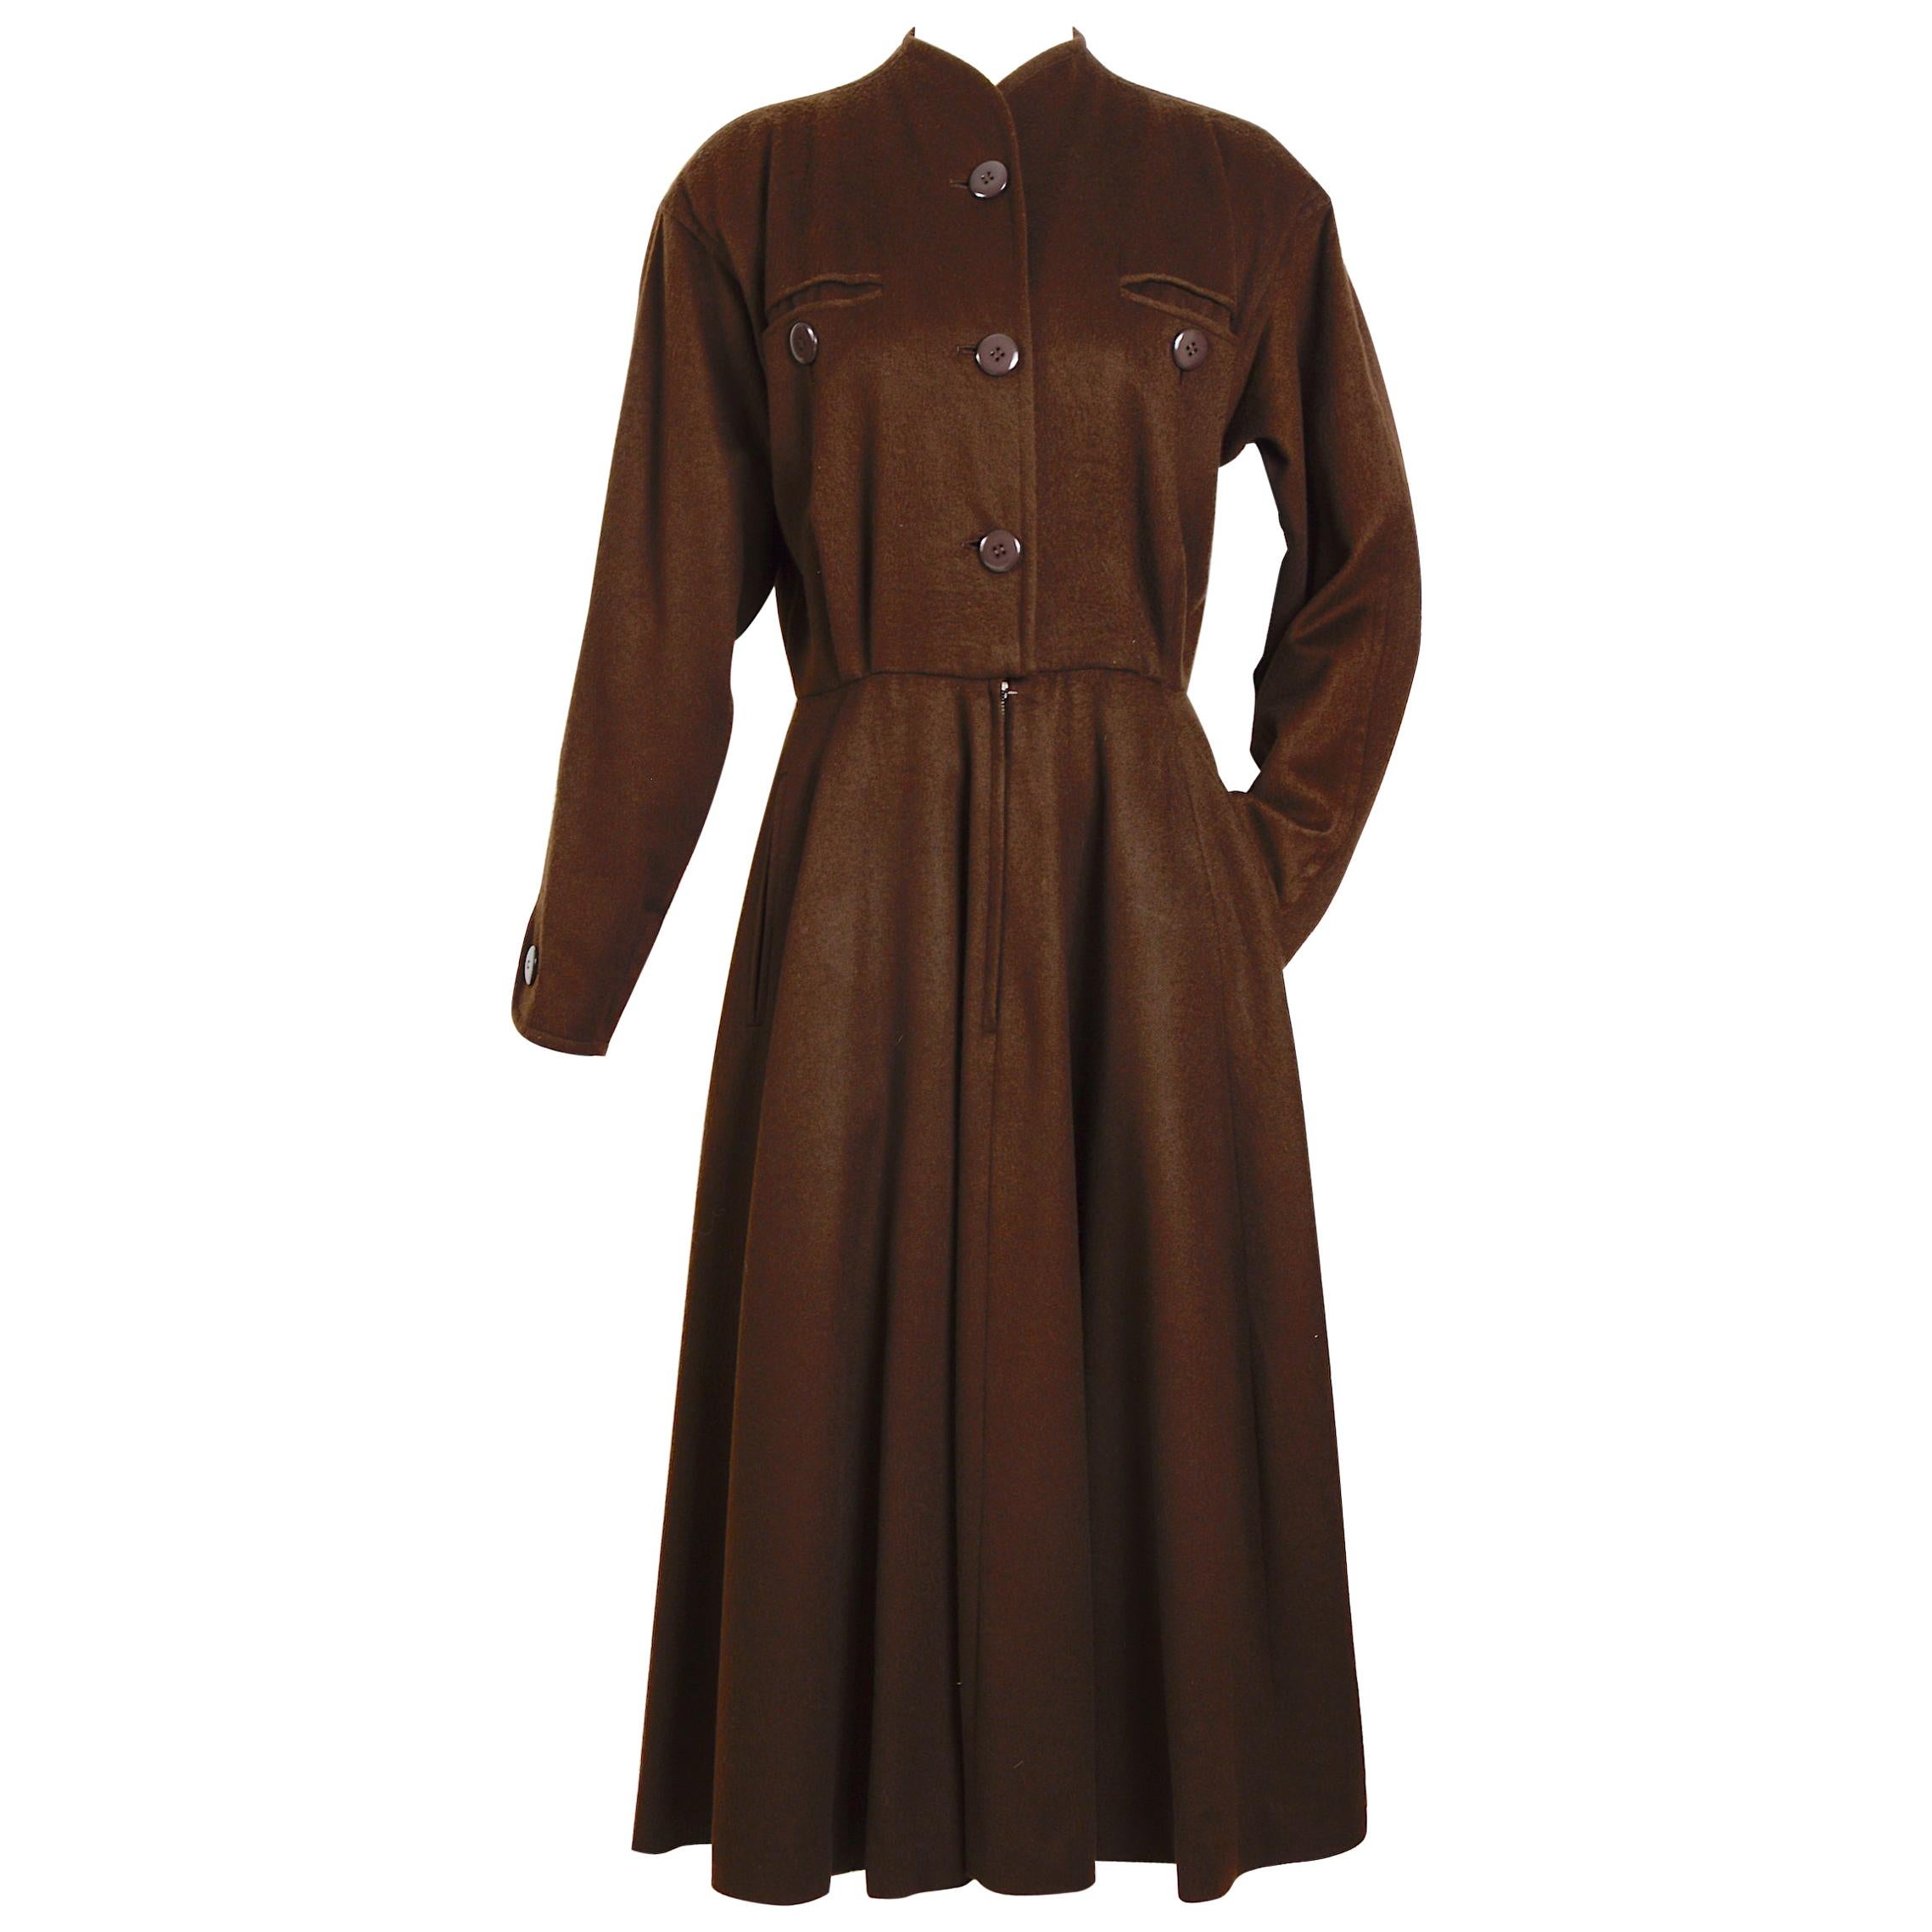 Yves Saint Laurent vintage 1970s brown wool winter dress